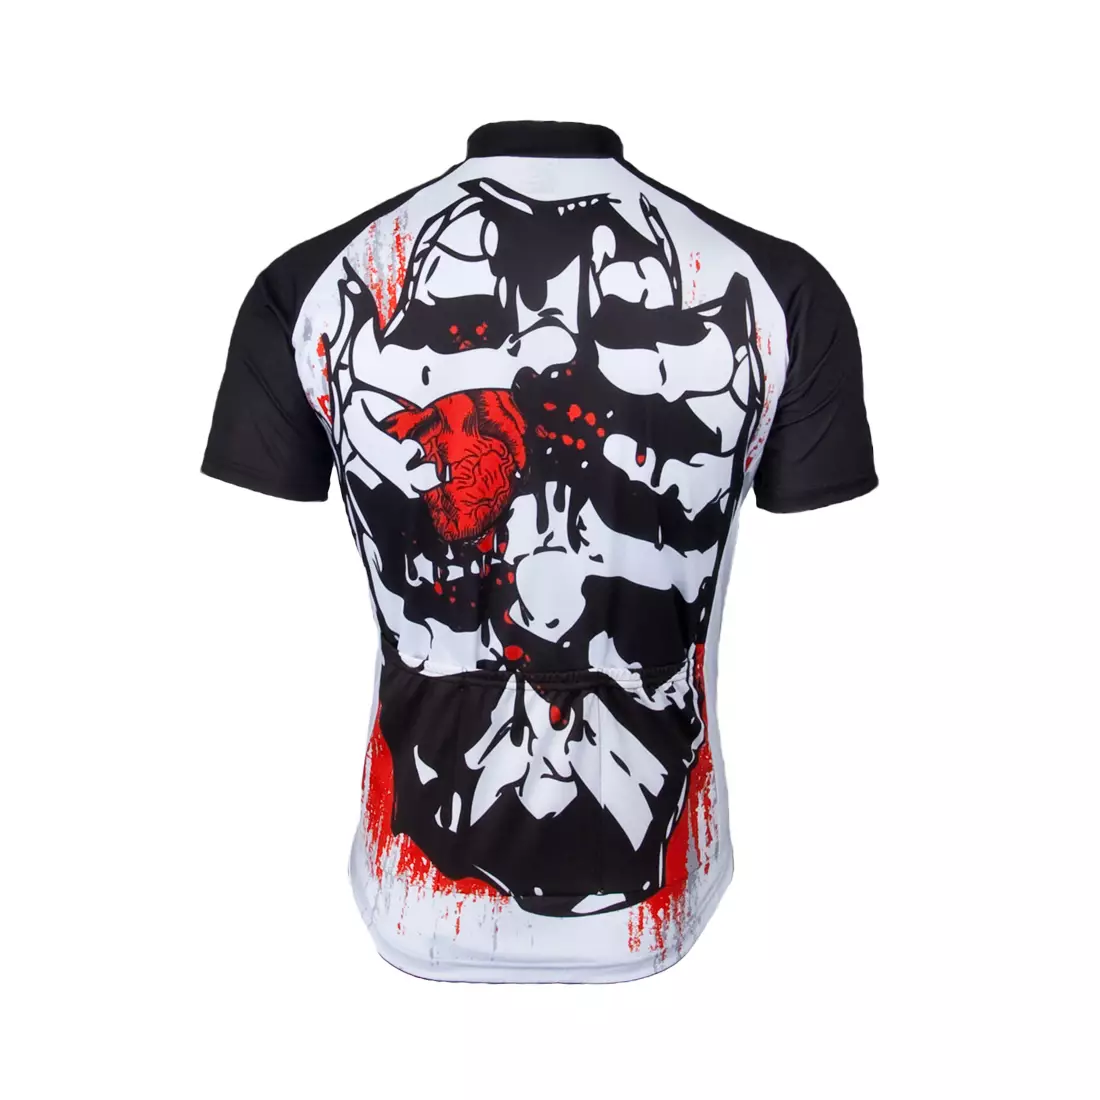 MikeSPORT DESIGN - BONES - men's cycling jersey, full zipper